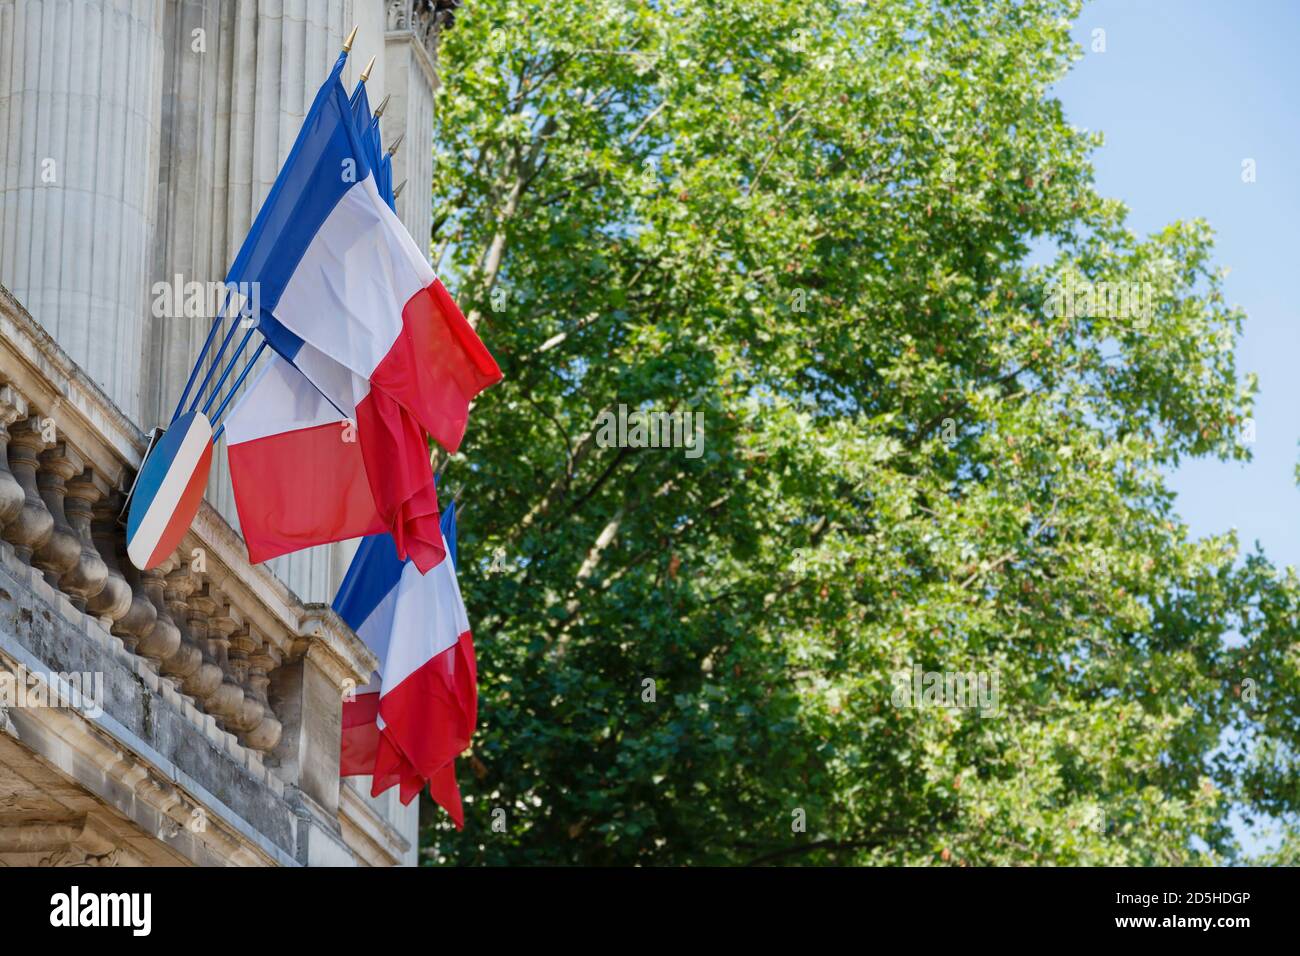 LILLE, FRANCIA - 19 luglio 2013. Vere bandiere francesi che sventolano. Bandiere nazionali francesi fuori da un edificio storico a Lille, Francia Foto Stock